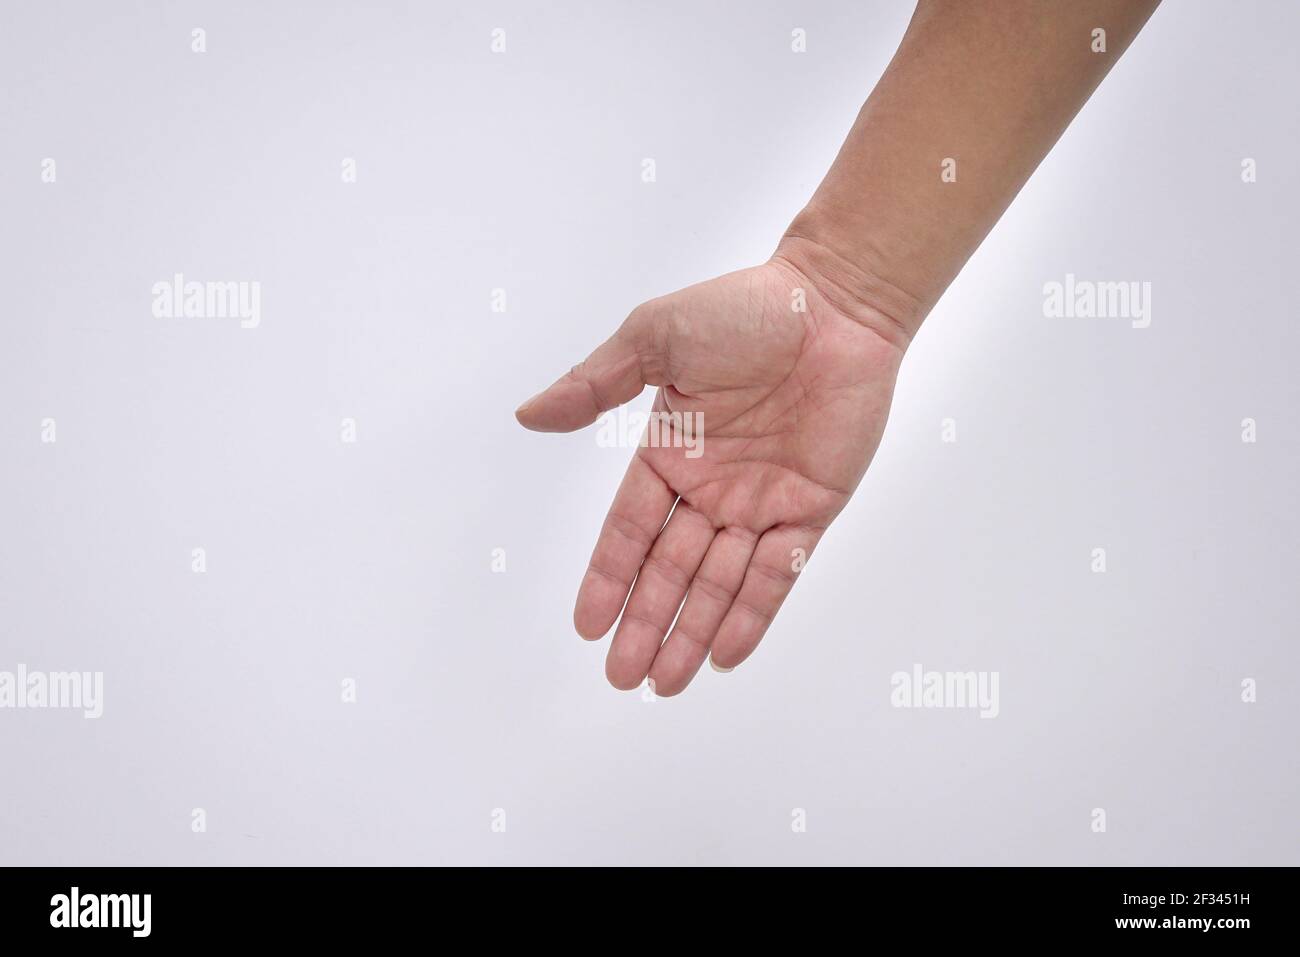 Mano maschile adulta che raggiunge il basso, palmo aperto per aiutare il gesto. Isolato su sfondo bianco. Foto Stock